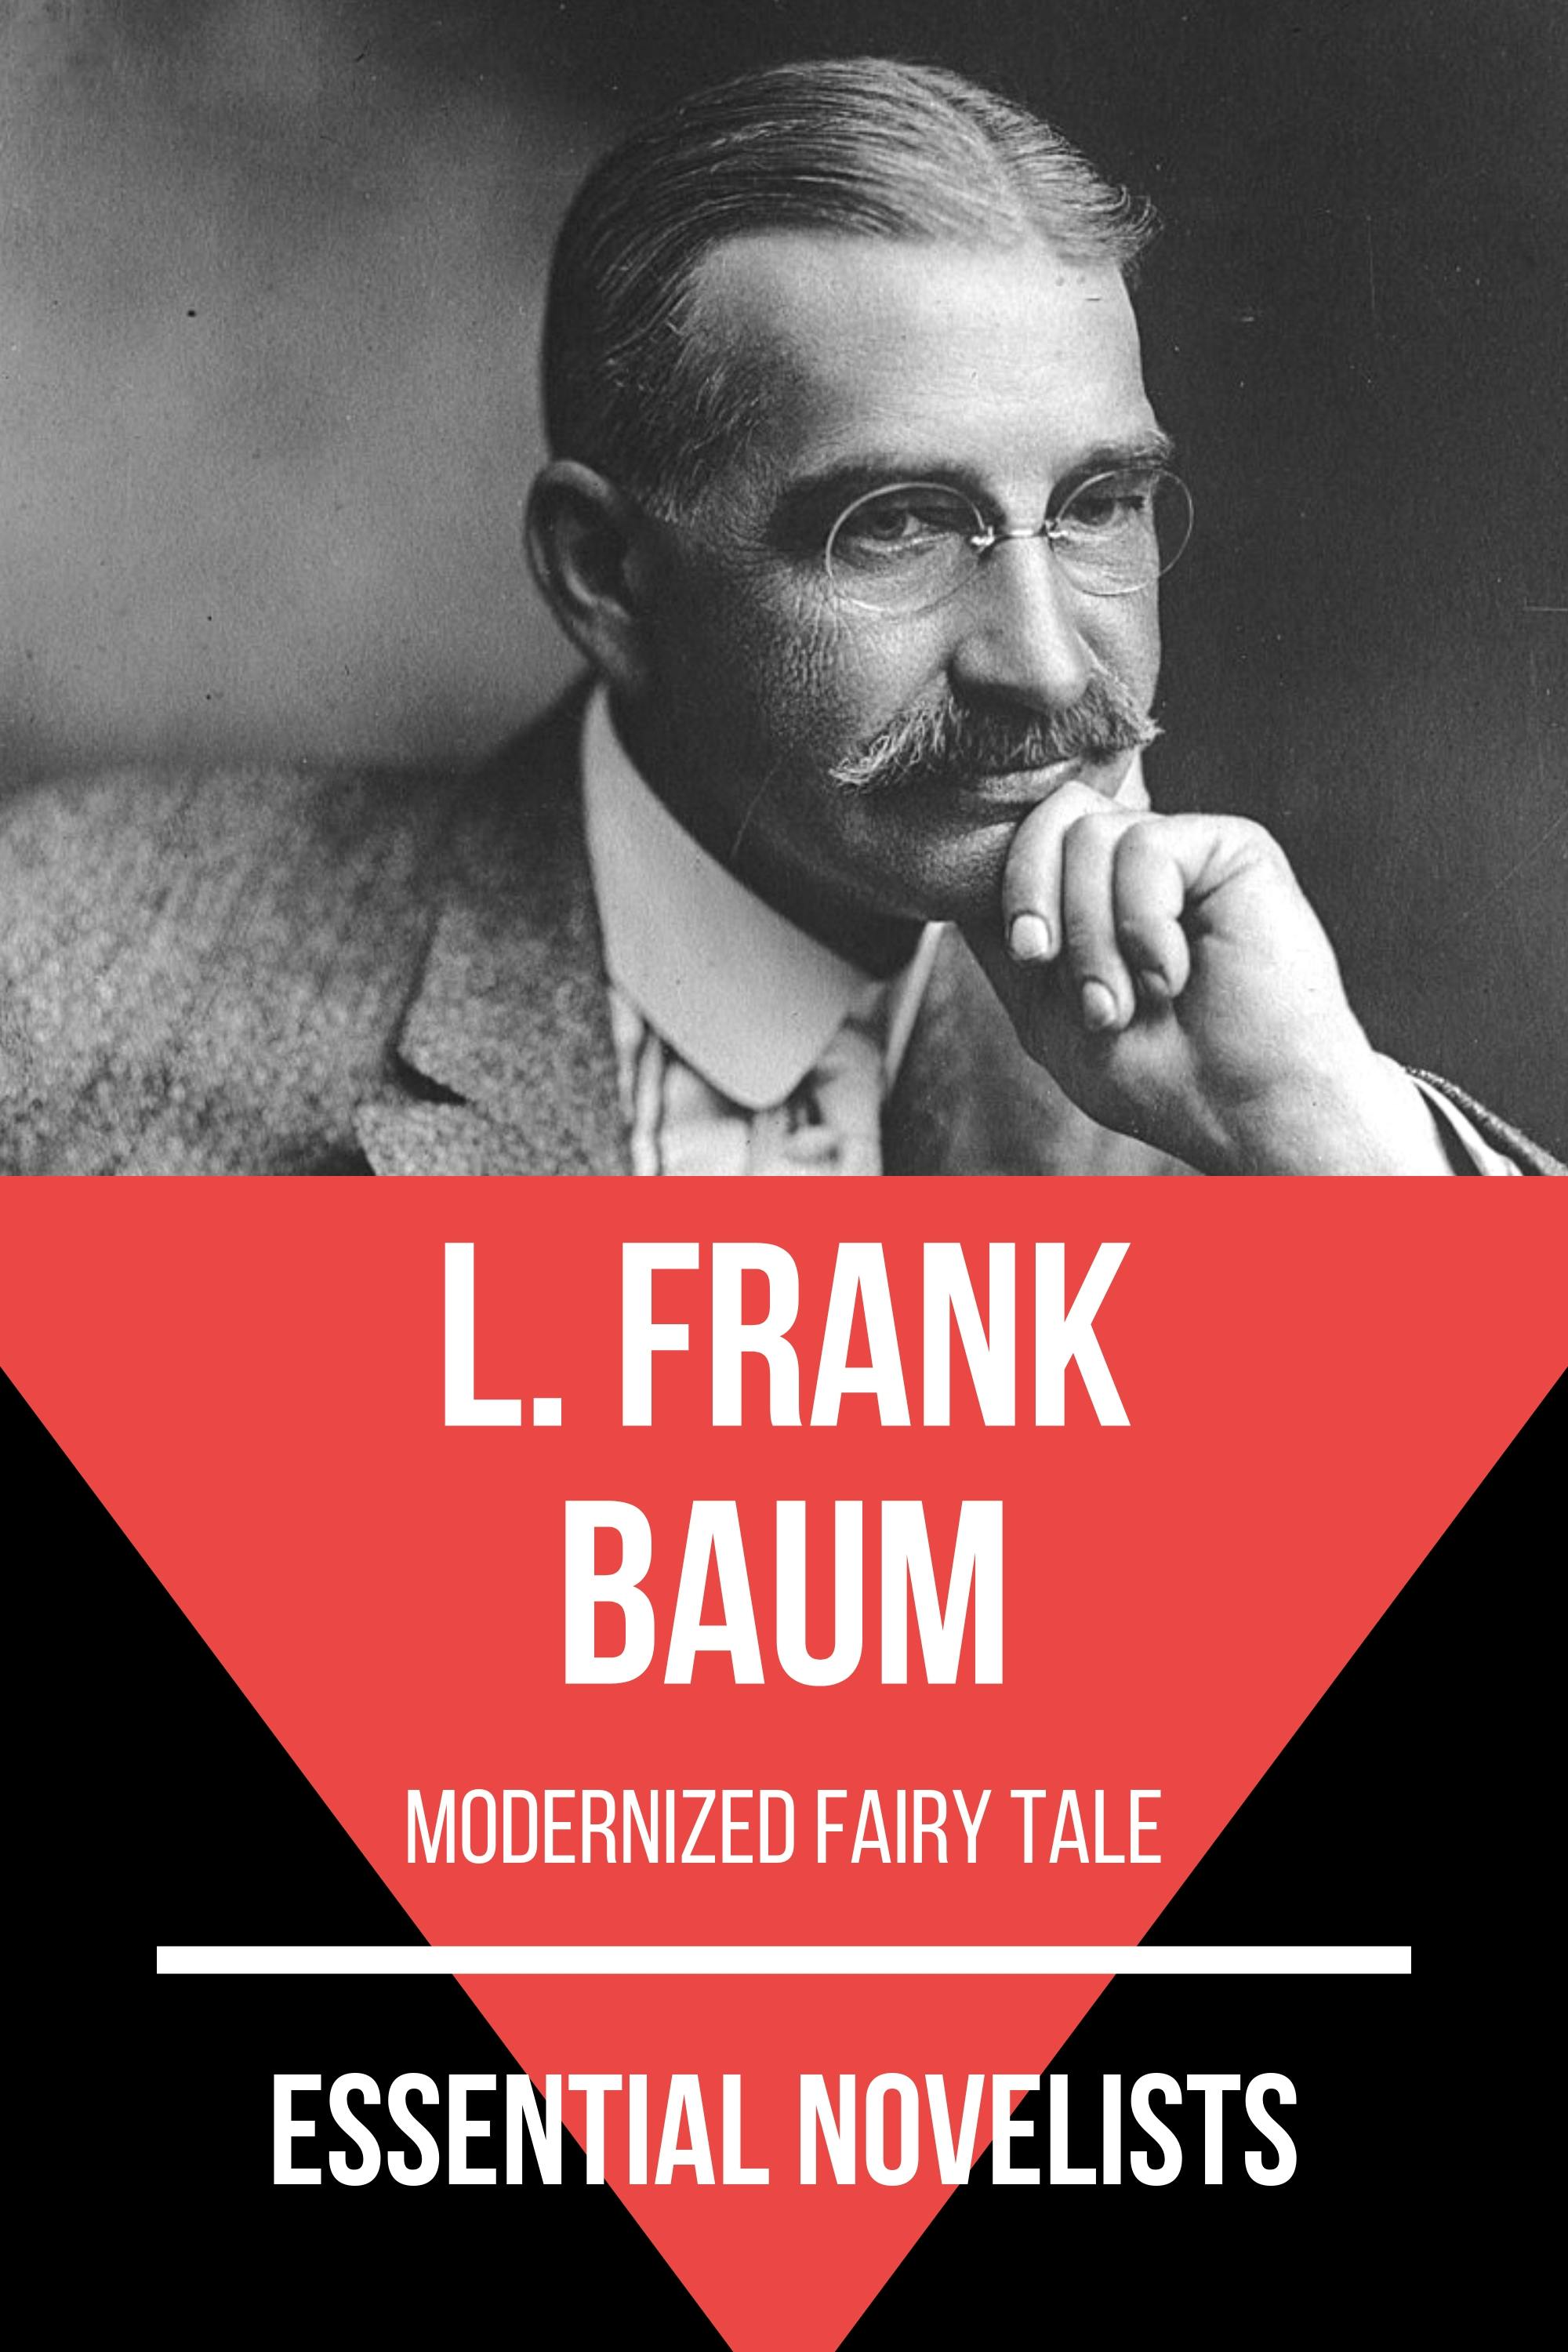 Essential Novelists - L. Frank Baum: modernized fairy tale - August Nemo, L. Frank Baum